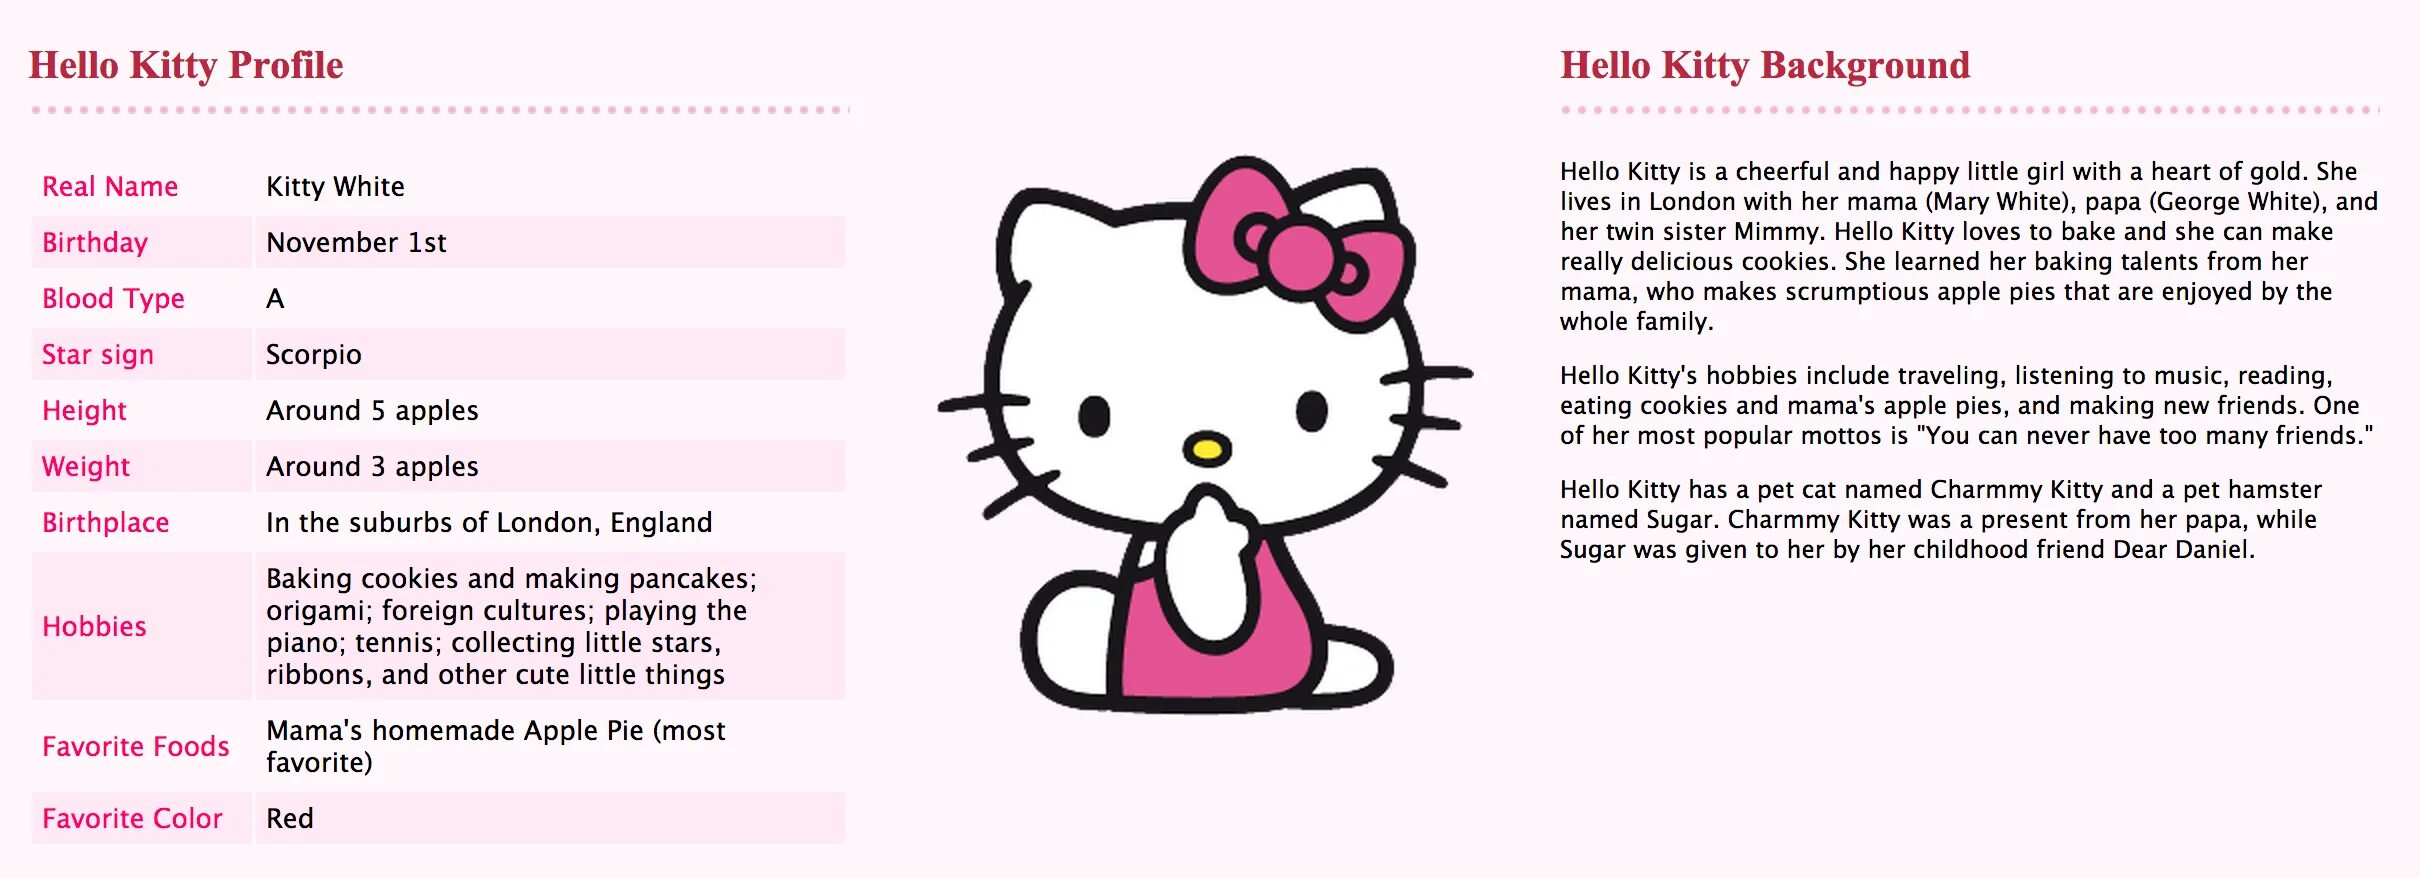 Имя хеллоу китти на русском. Хеллоу Китти имена. Hello Kitty персонажи с именами. Hello Kitty с описанием. Хеллоу Китти и друзья имена.